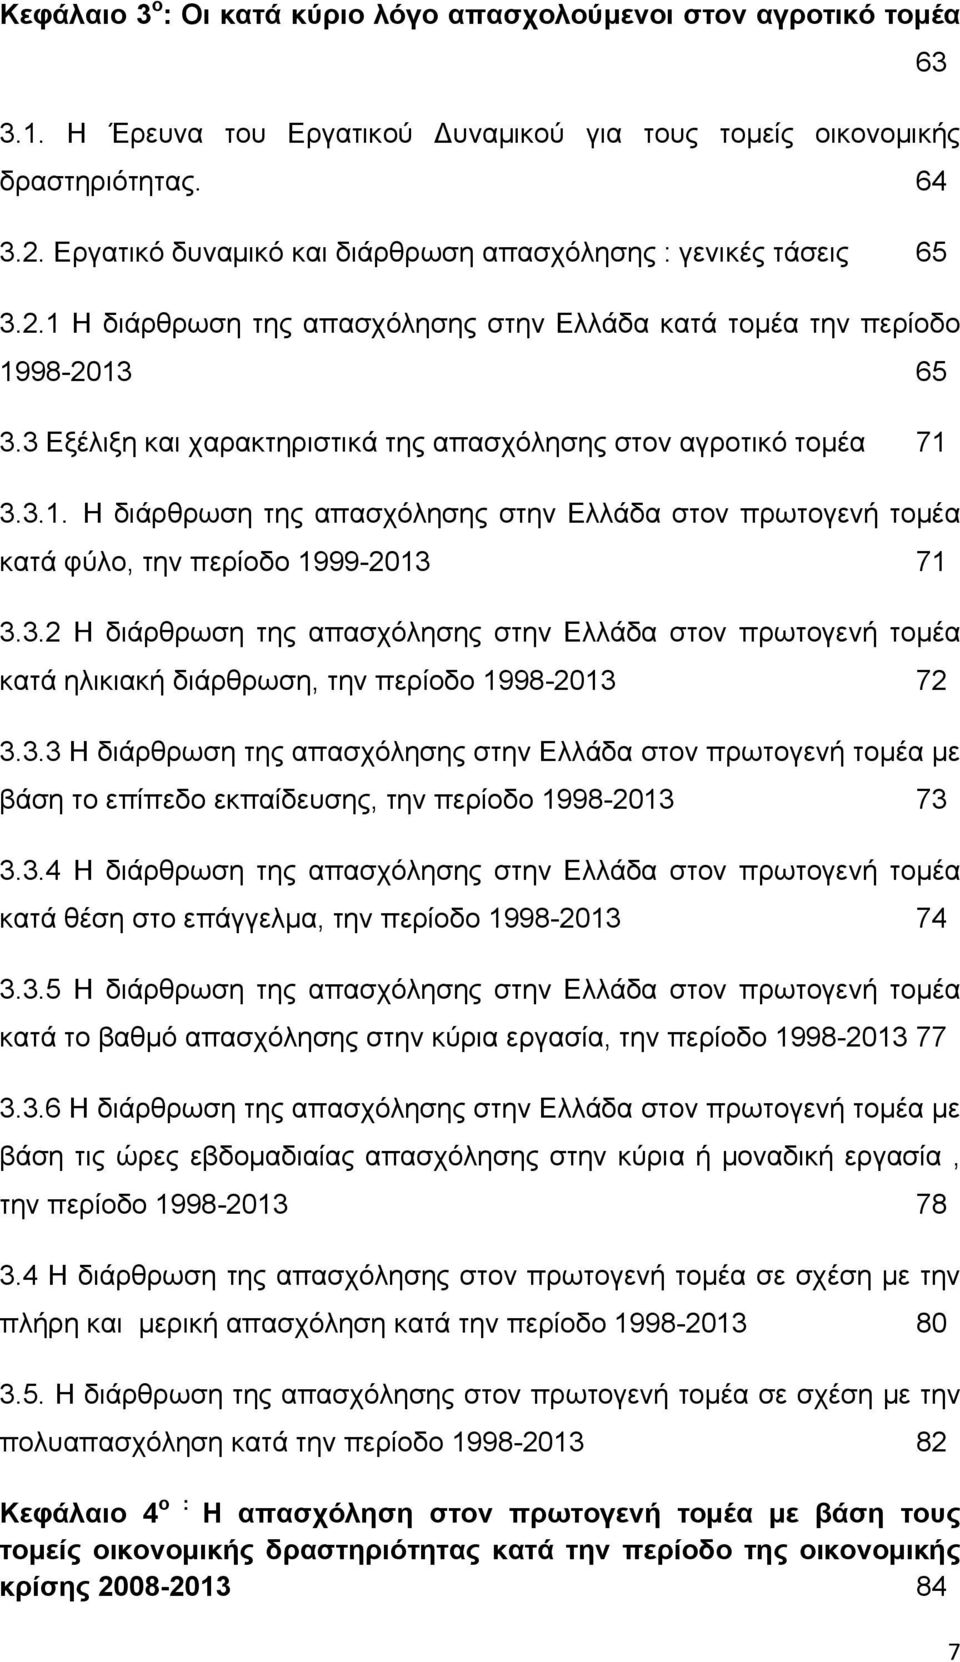 3 Εξέλιξη και χαρακτηριστικά της απασχόλησης στον αγροτικό τομέα 71 3.3.1. Η διάρθρωση της απασχόλησης στην Ελλάδα στον πρωτογενή τομέα κατά φύλο, την περίοδο 1999-2013 71 3.3.2 Η διάρθρωση της απασχόλησης στην Ελλάδα στον πρωτογενή τομέα κατά ηλικιακή διάρθρωση, την περίοδο 1998-2013 72 3.